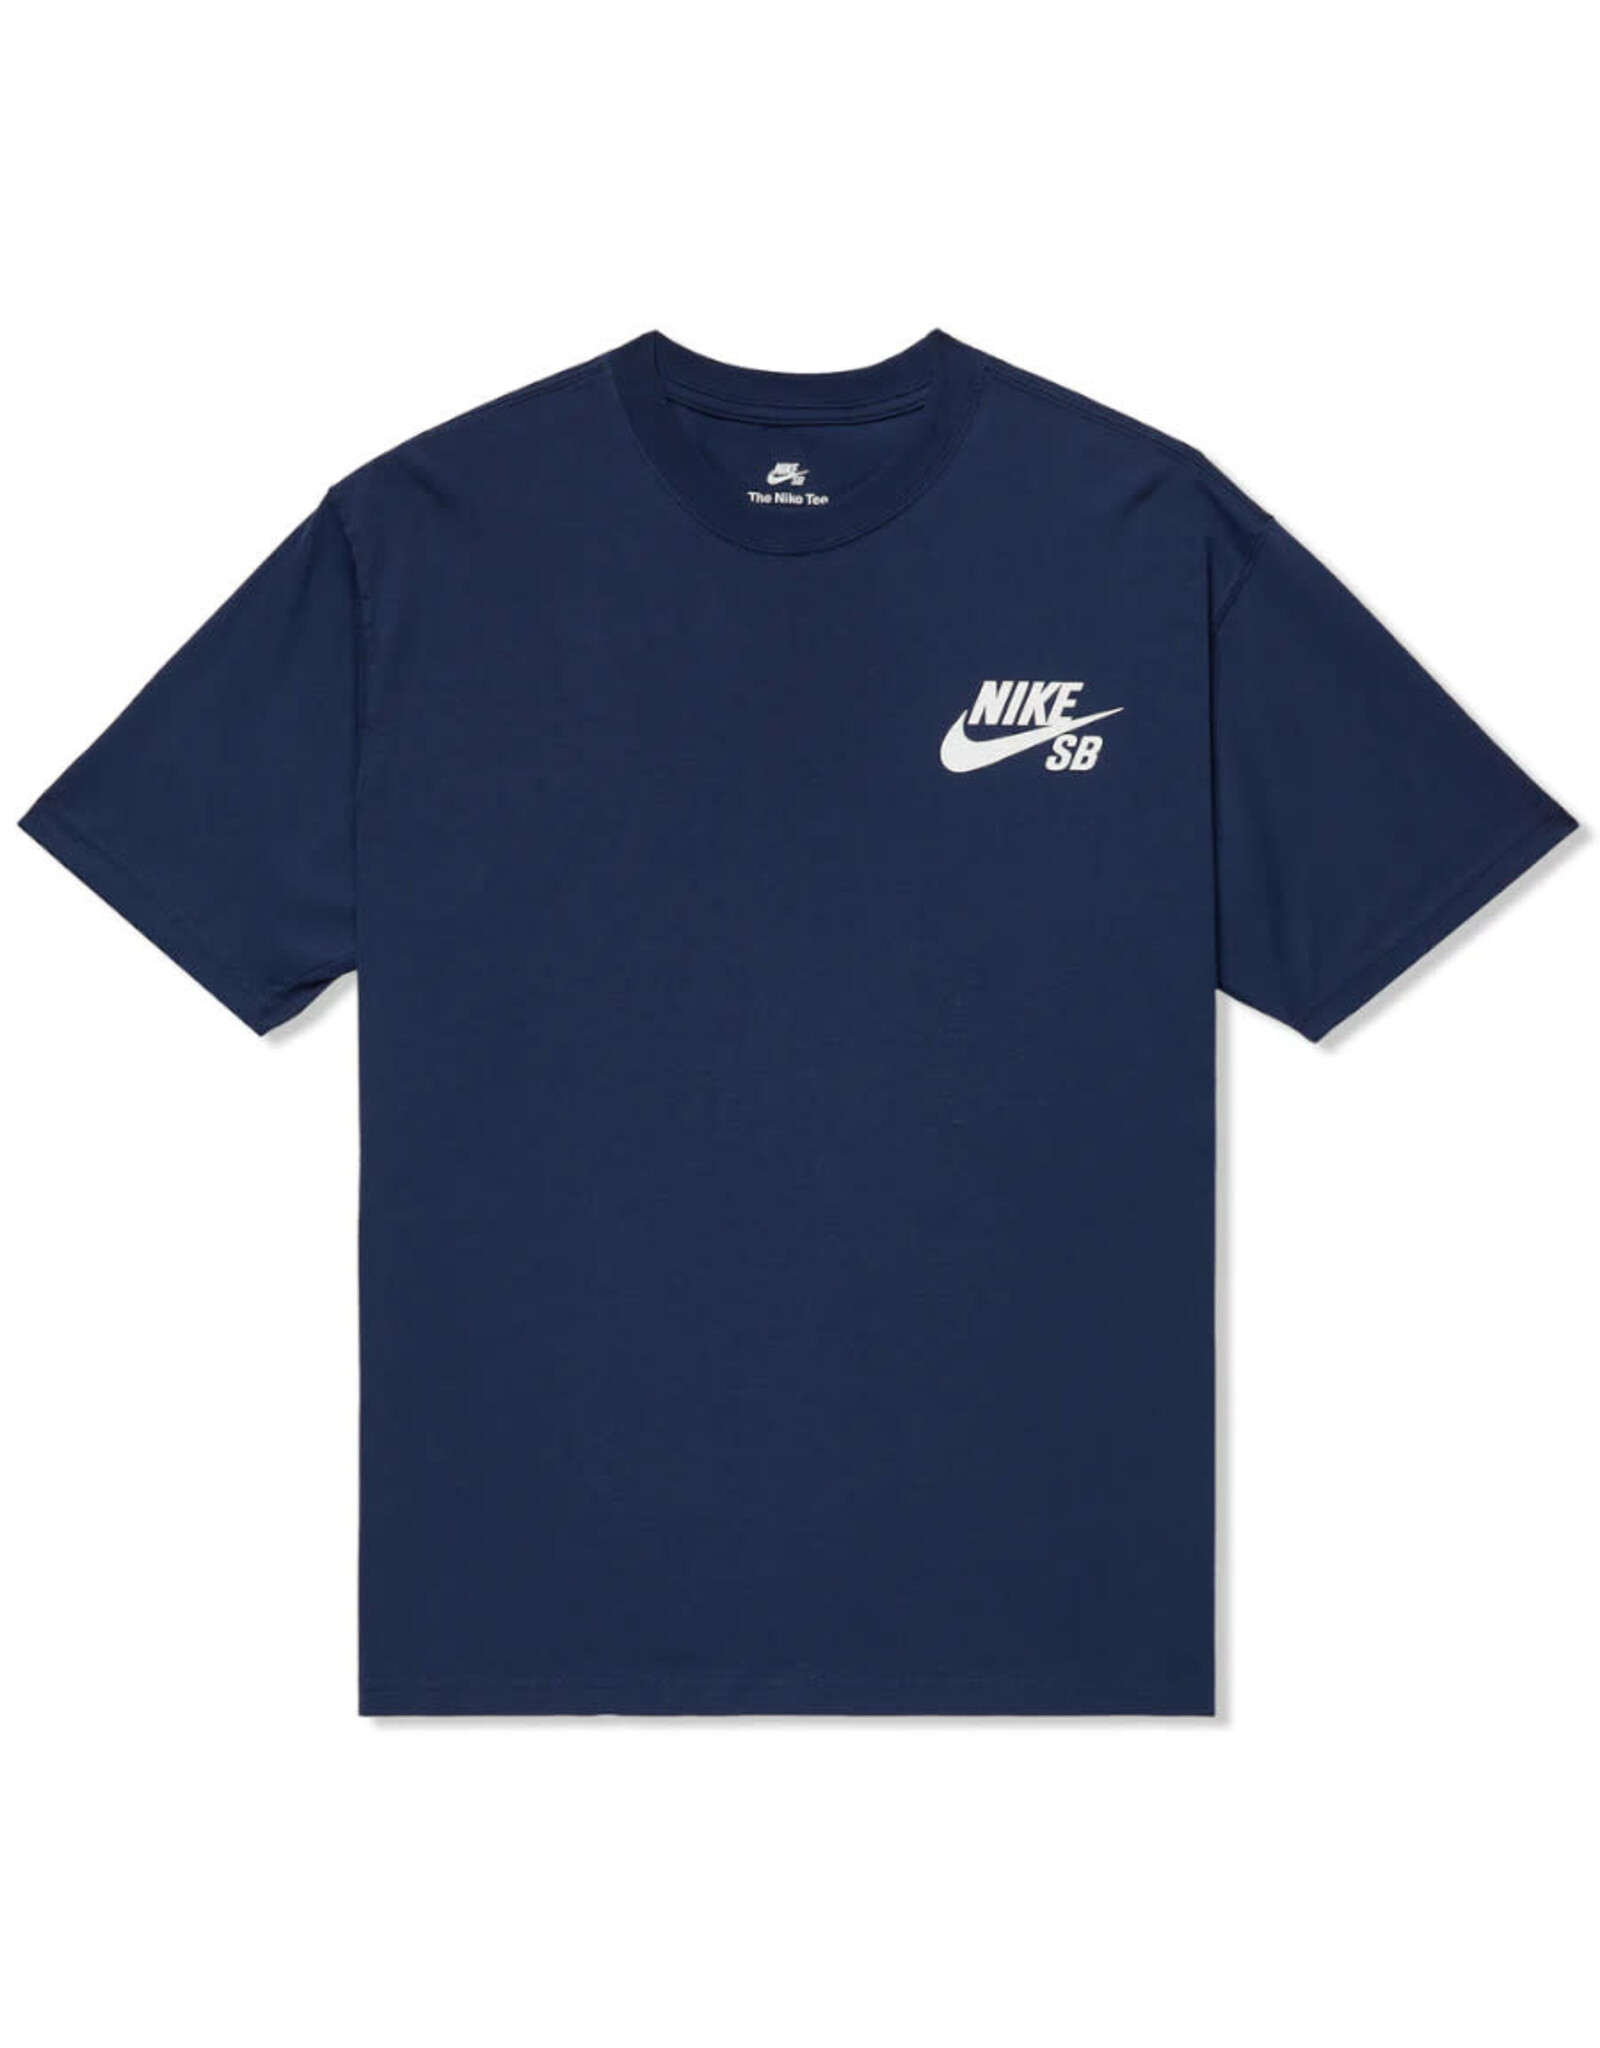 Nike SB Nike SB Tee Loose Fit Pocket Logo S/S (Navy/White)